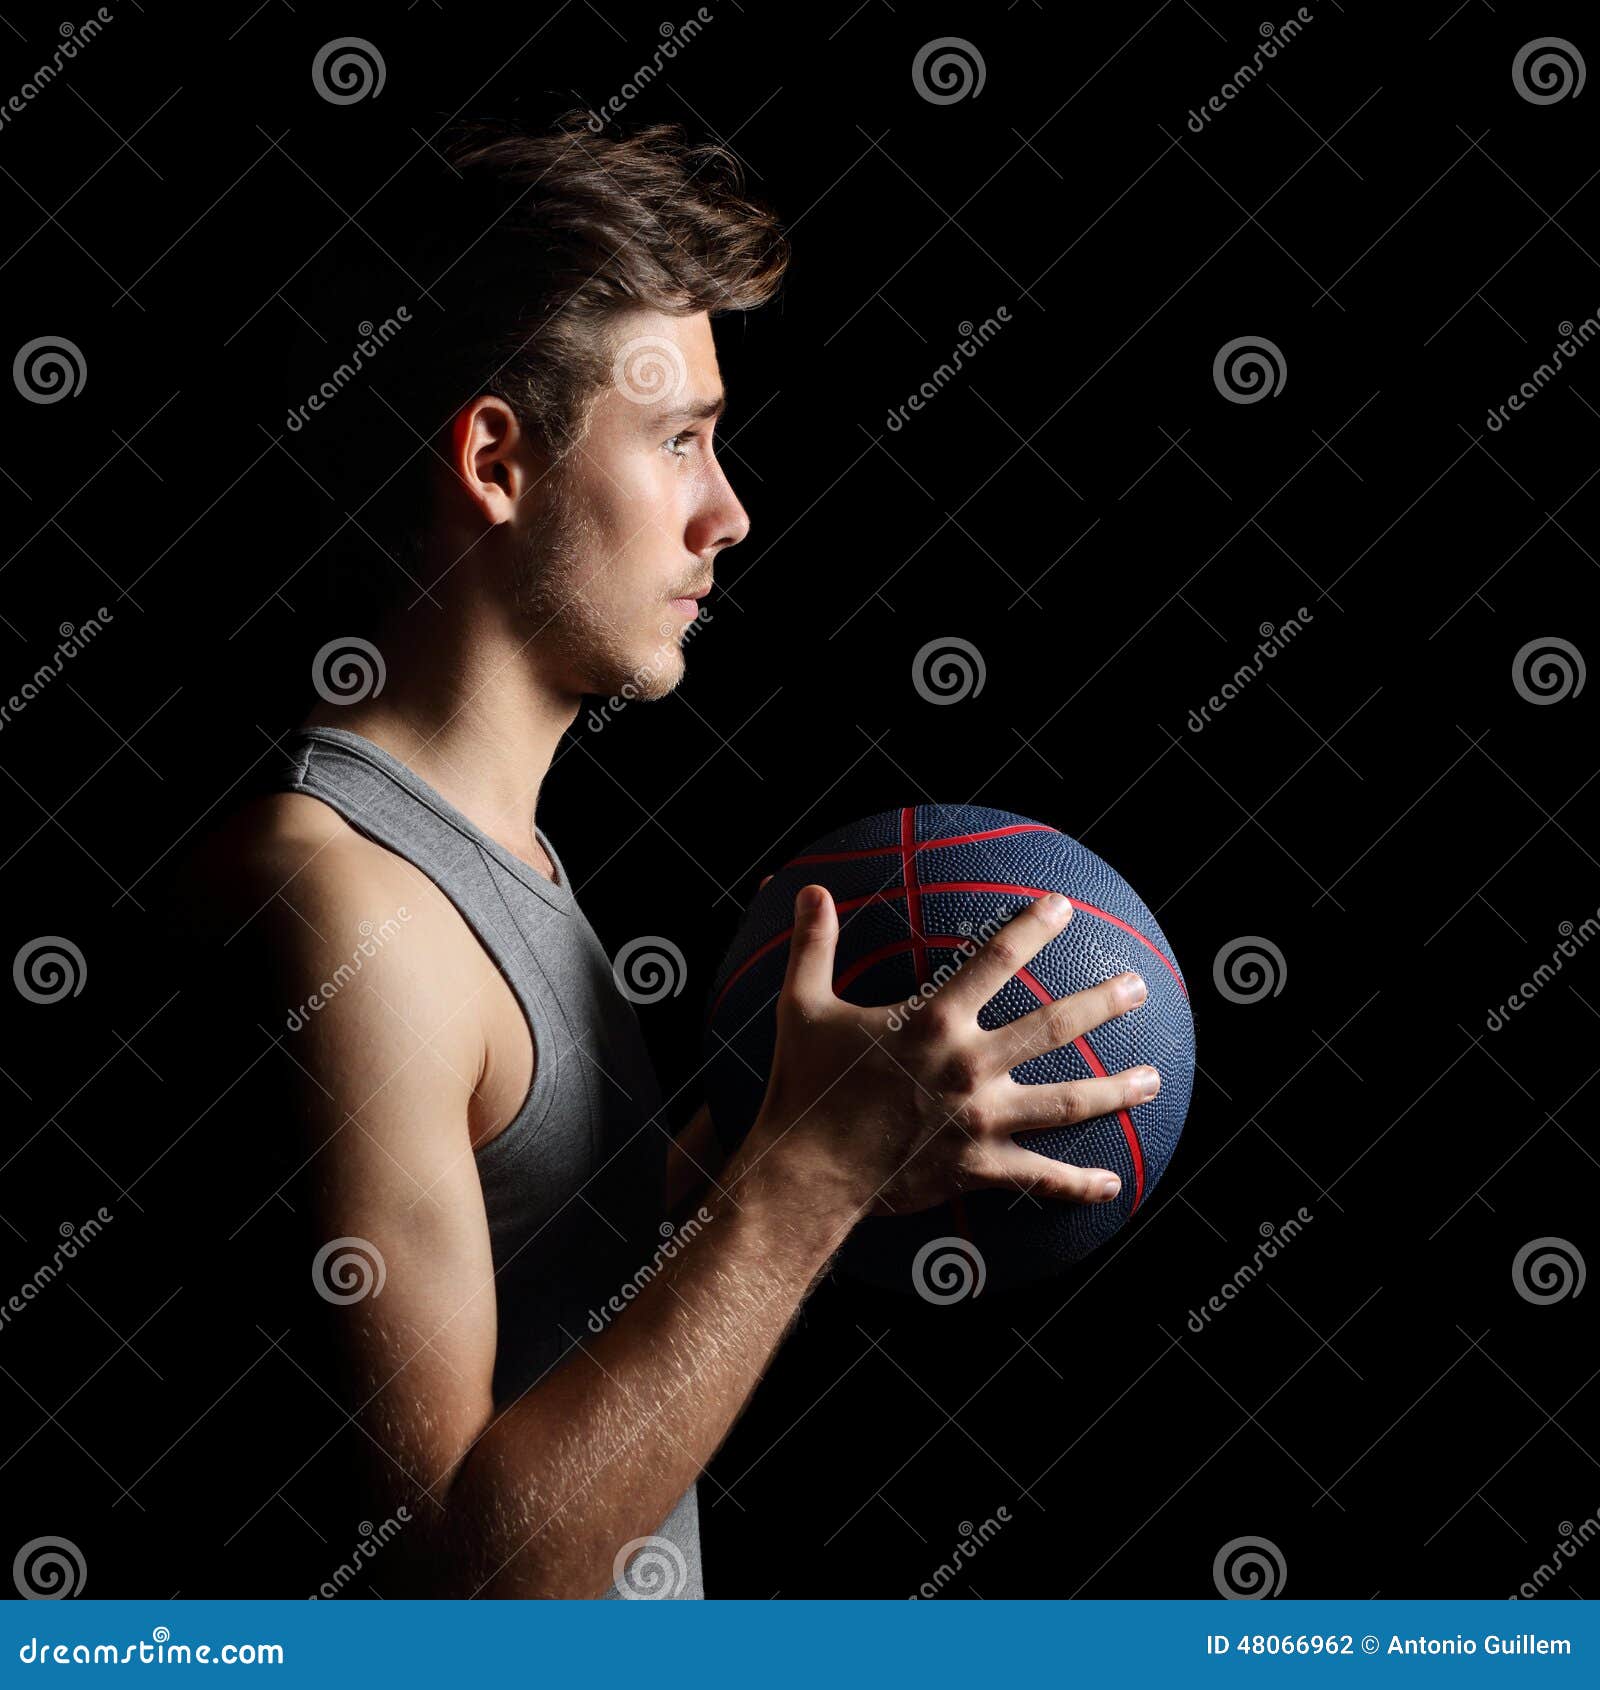 Баскетболист держит мяч. Держит мяч на шее. Фото баскетболистов с мячом в руках. Баскетболист держит в руках телефон. Hold players